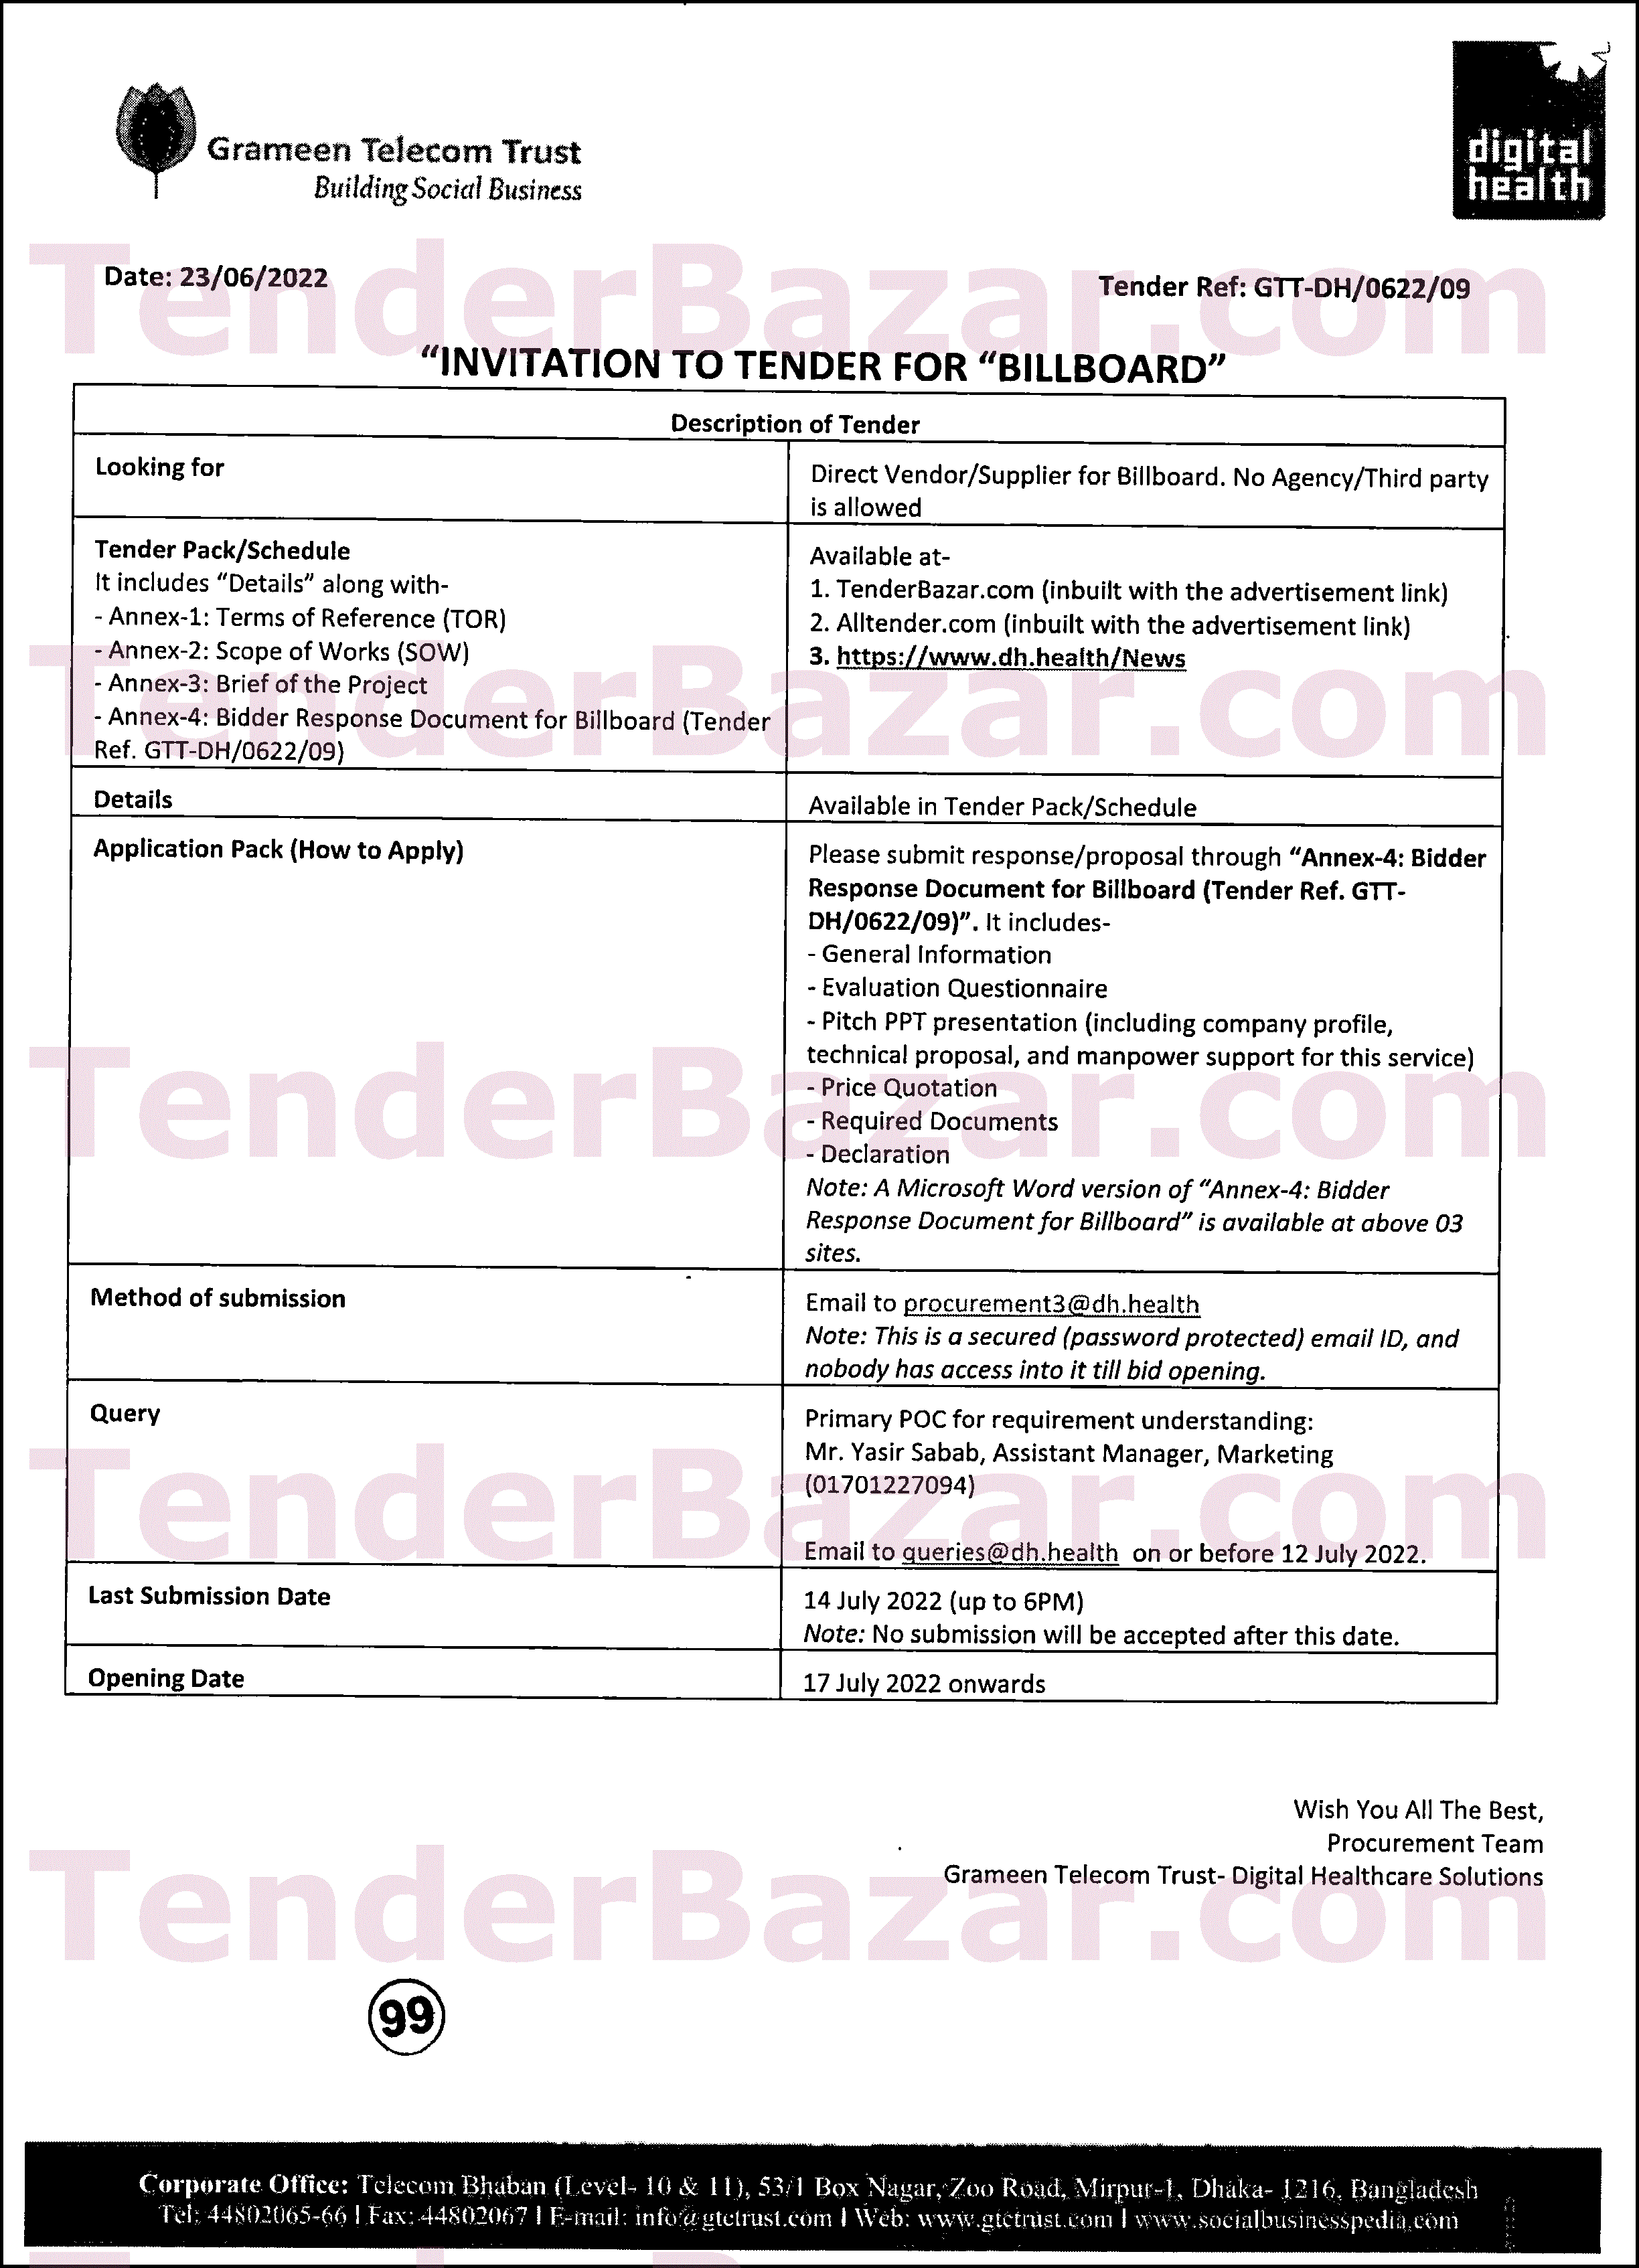 TenderBazar.com